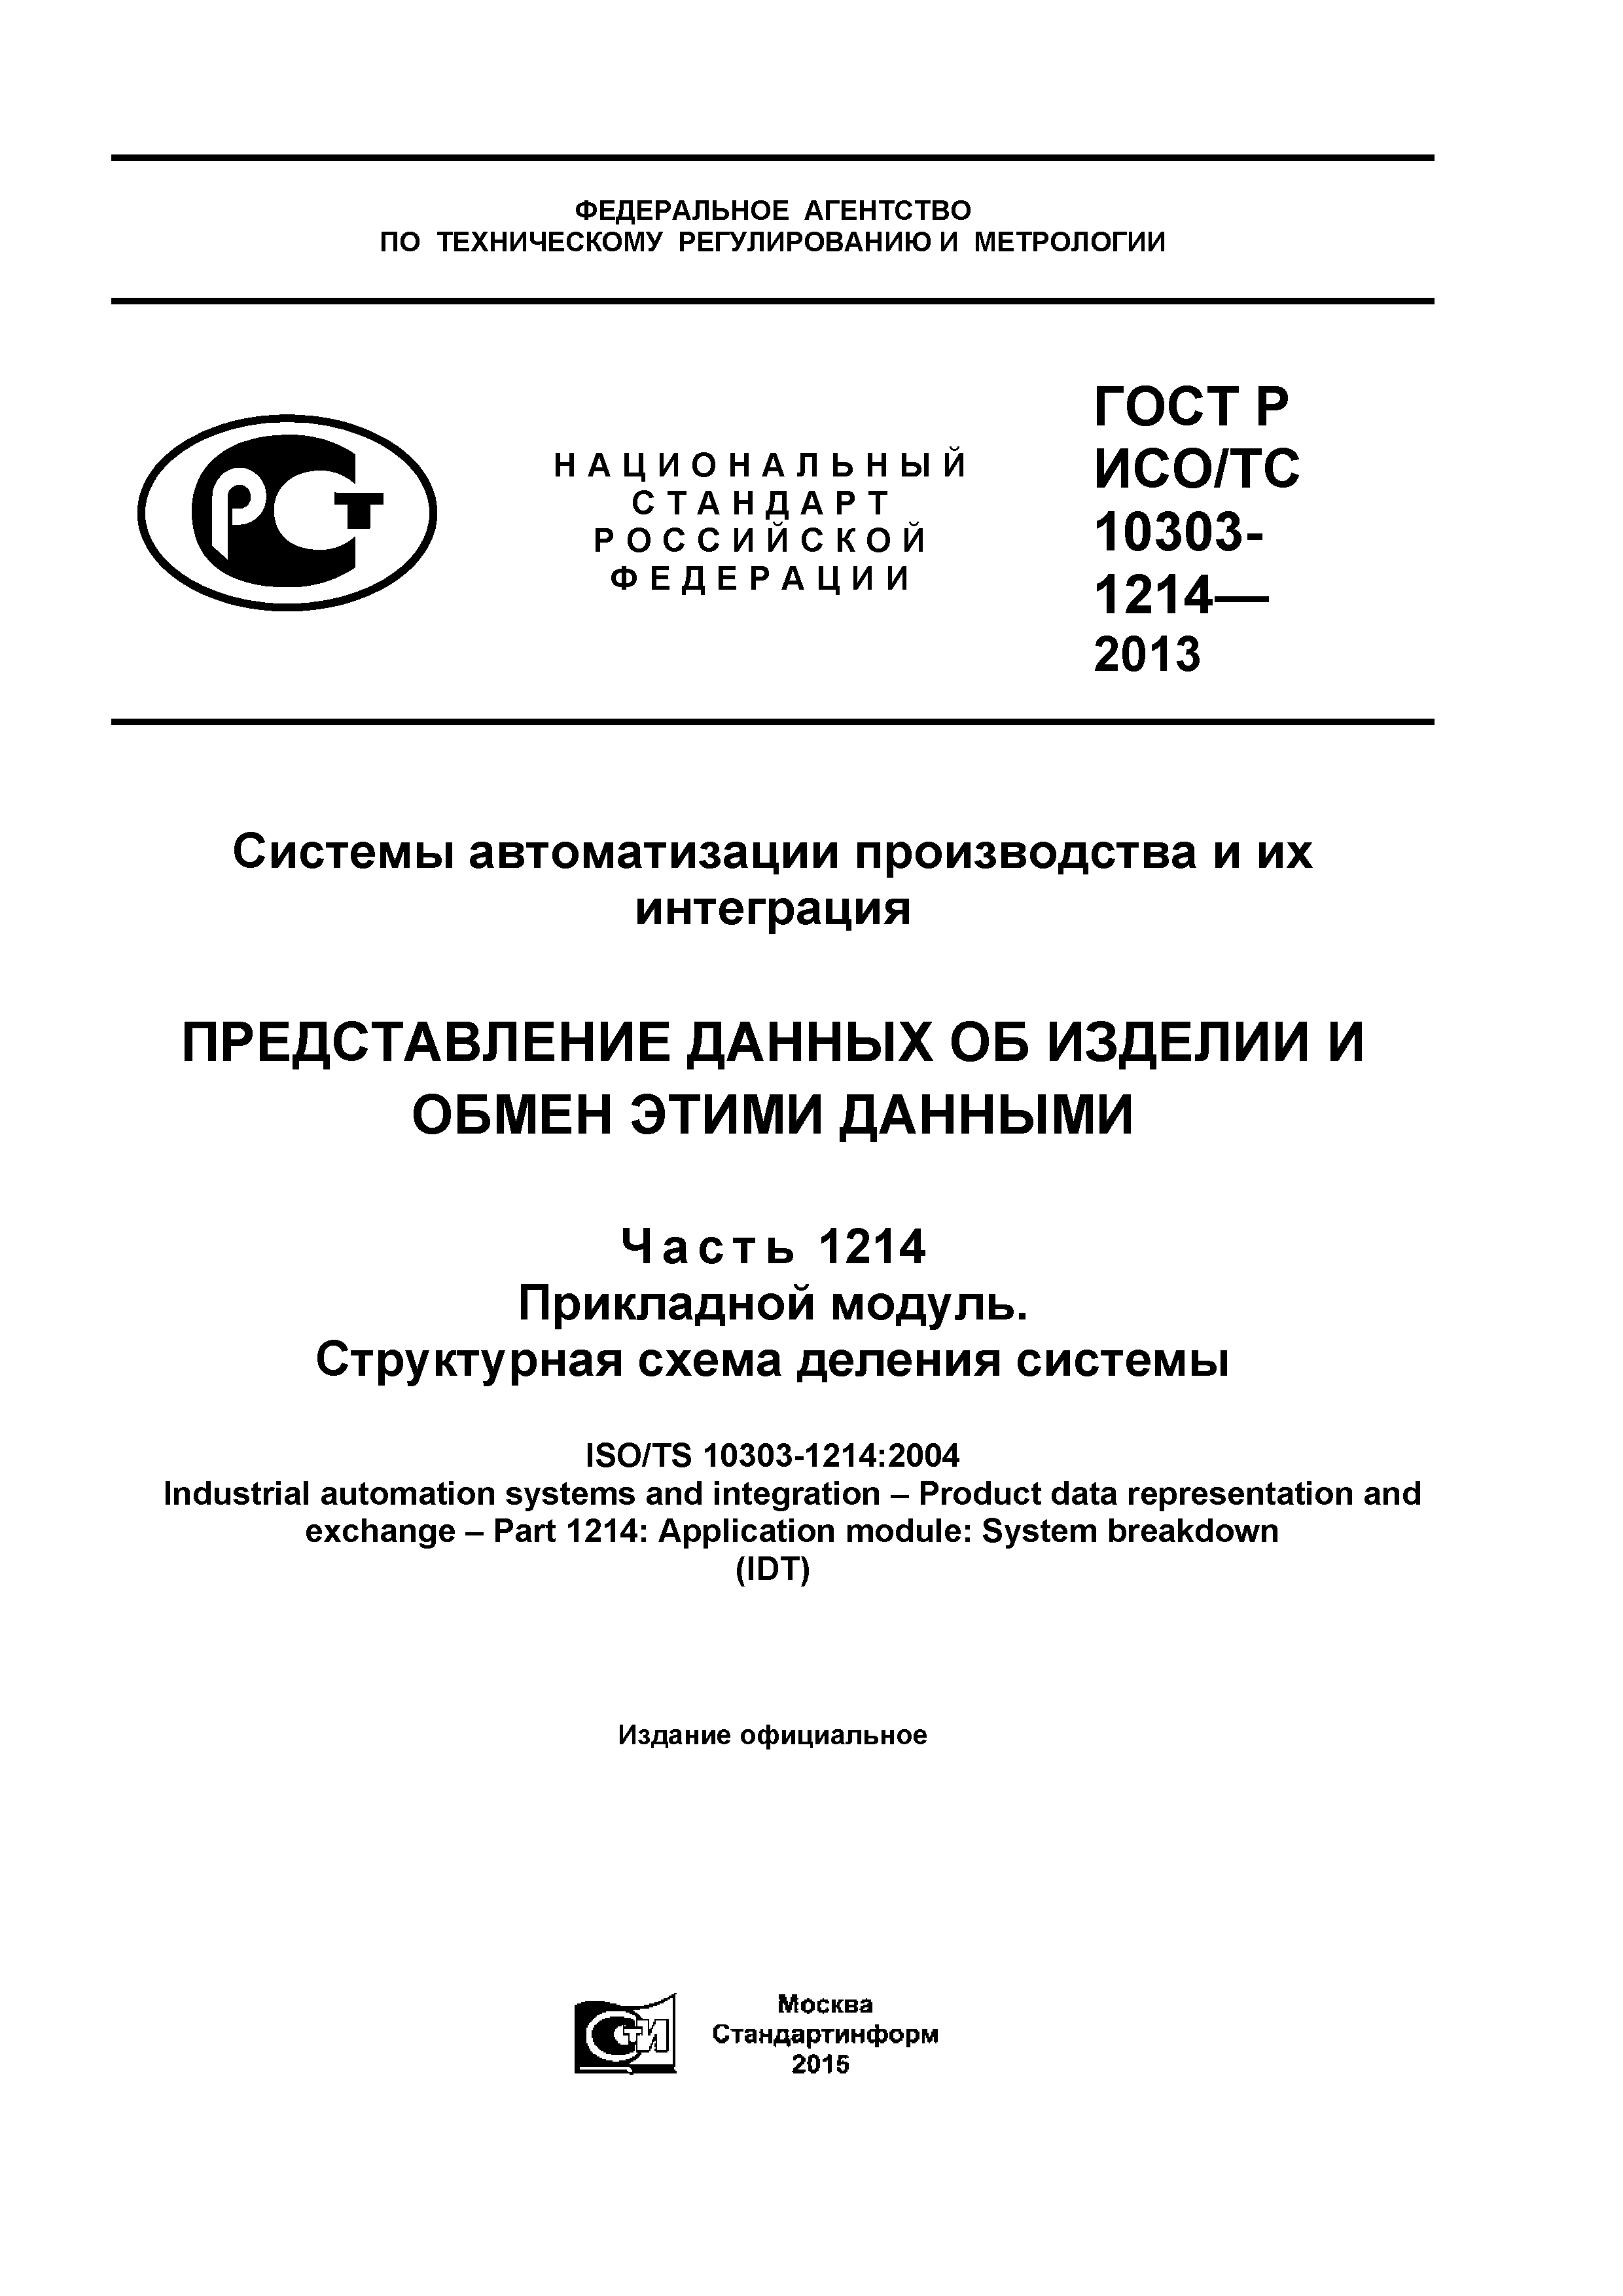 ГОСТ Р ИСО/ТС 10303-1214-2013